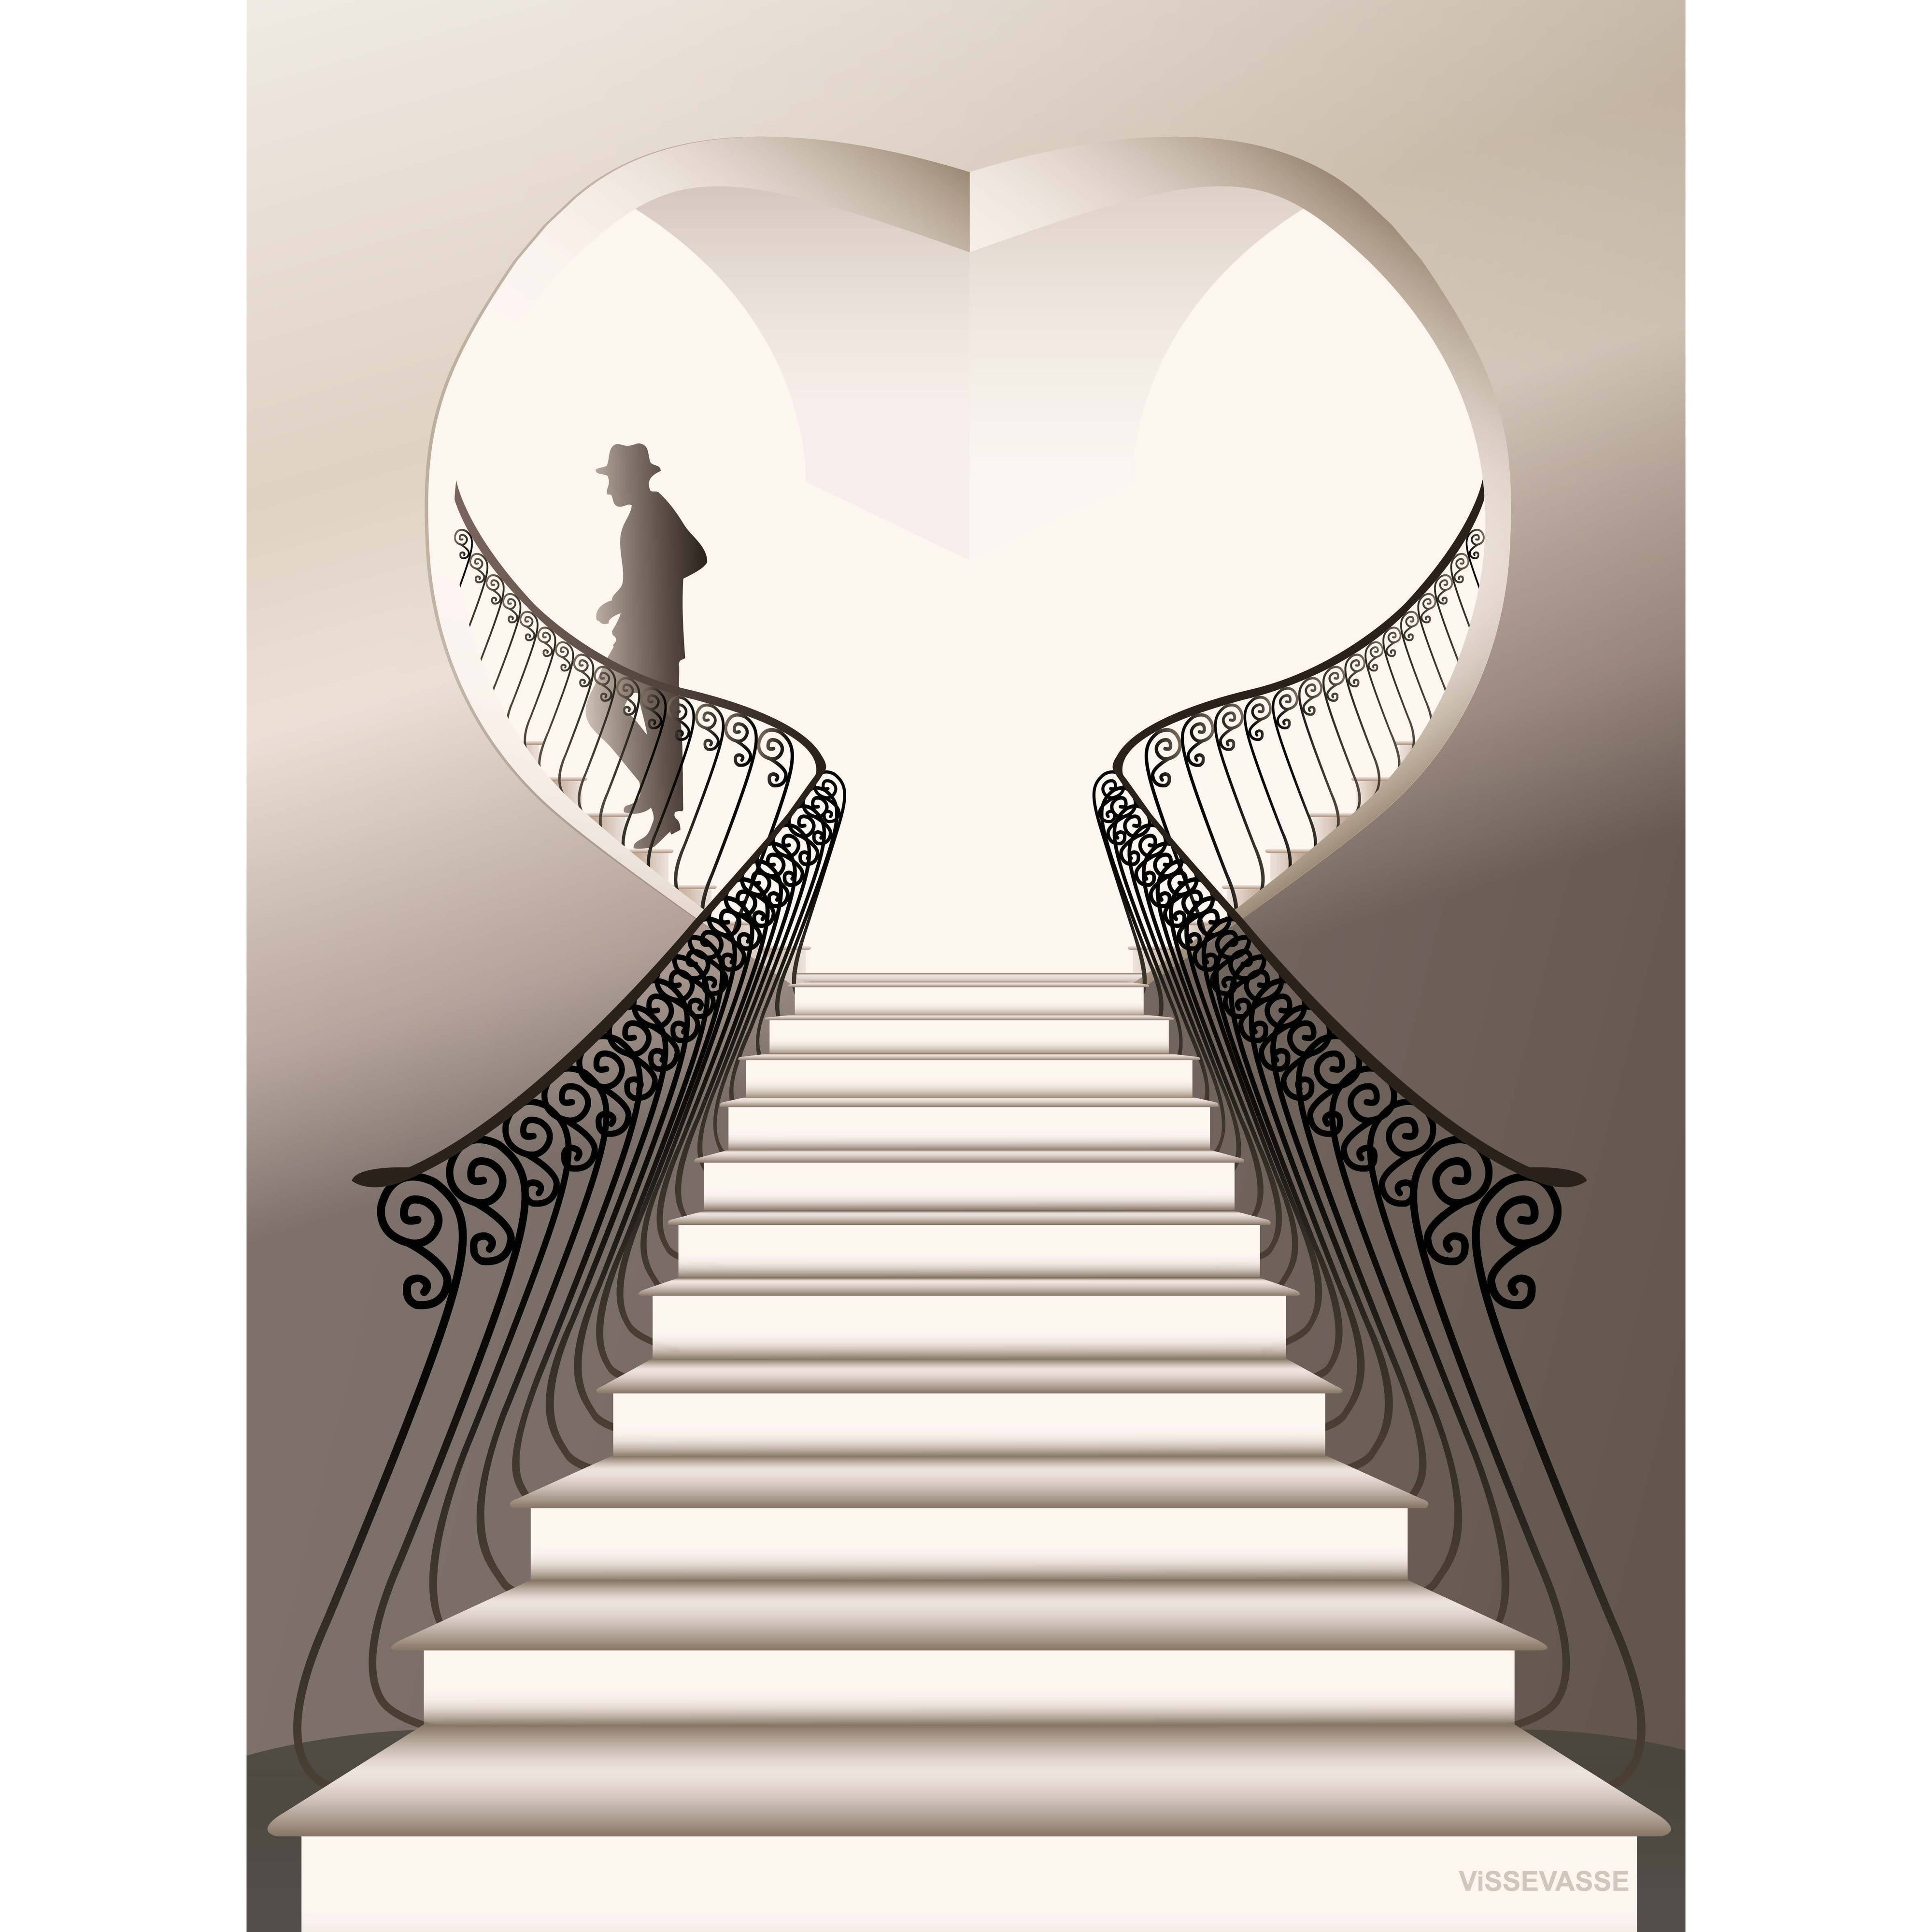 Affiche Vissevasse L'Homme Dans Les Escaliers, 15 X21 Cm